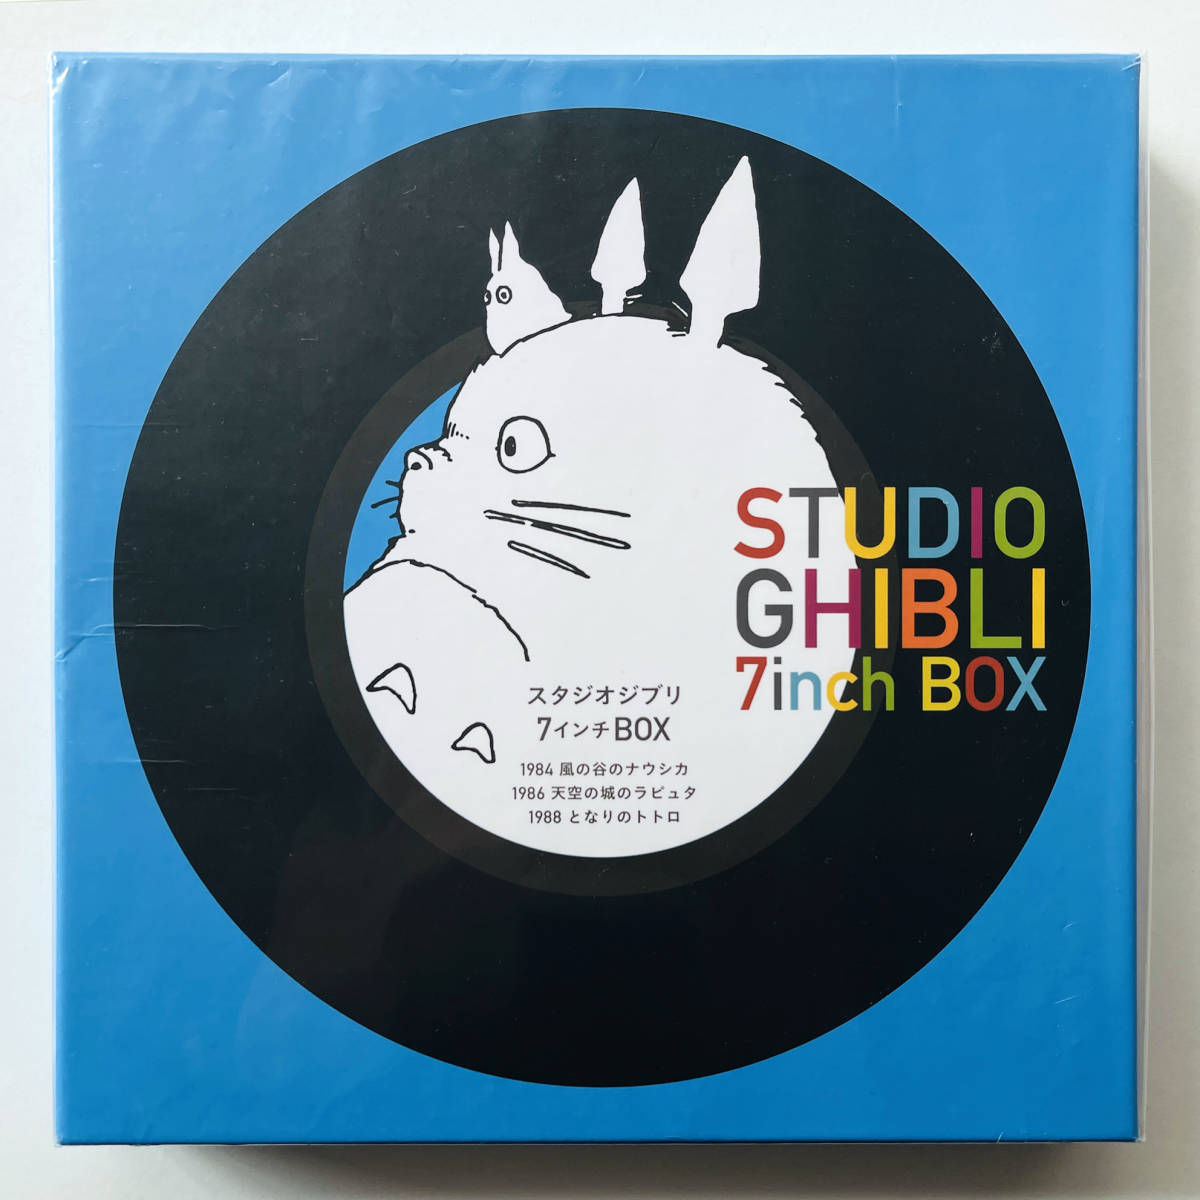 国内初の直営店 Box 7inch Ghibli Studio レコード5枚セット〔 限定